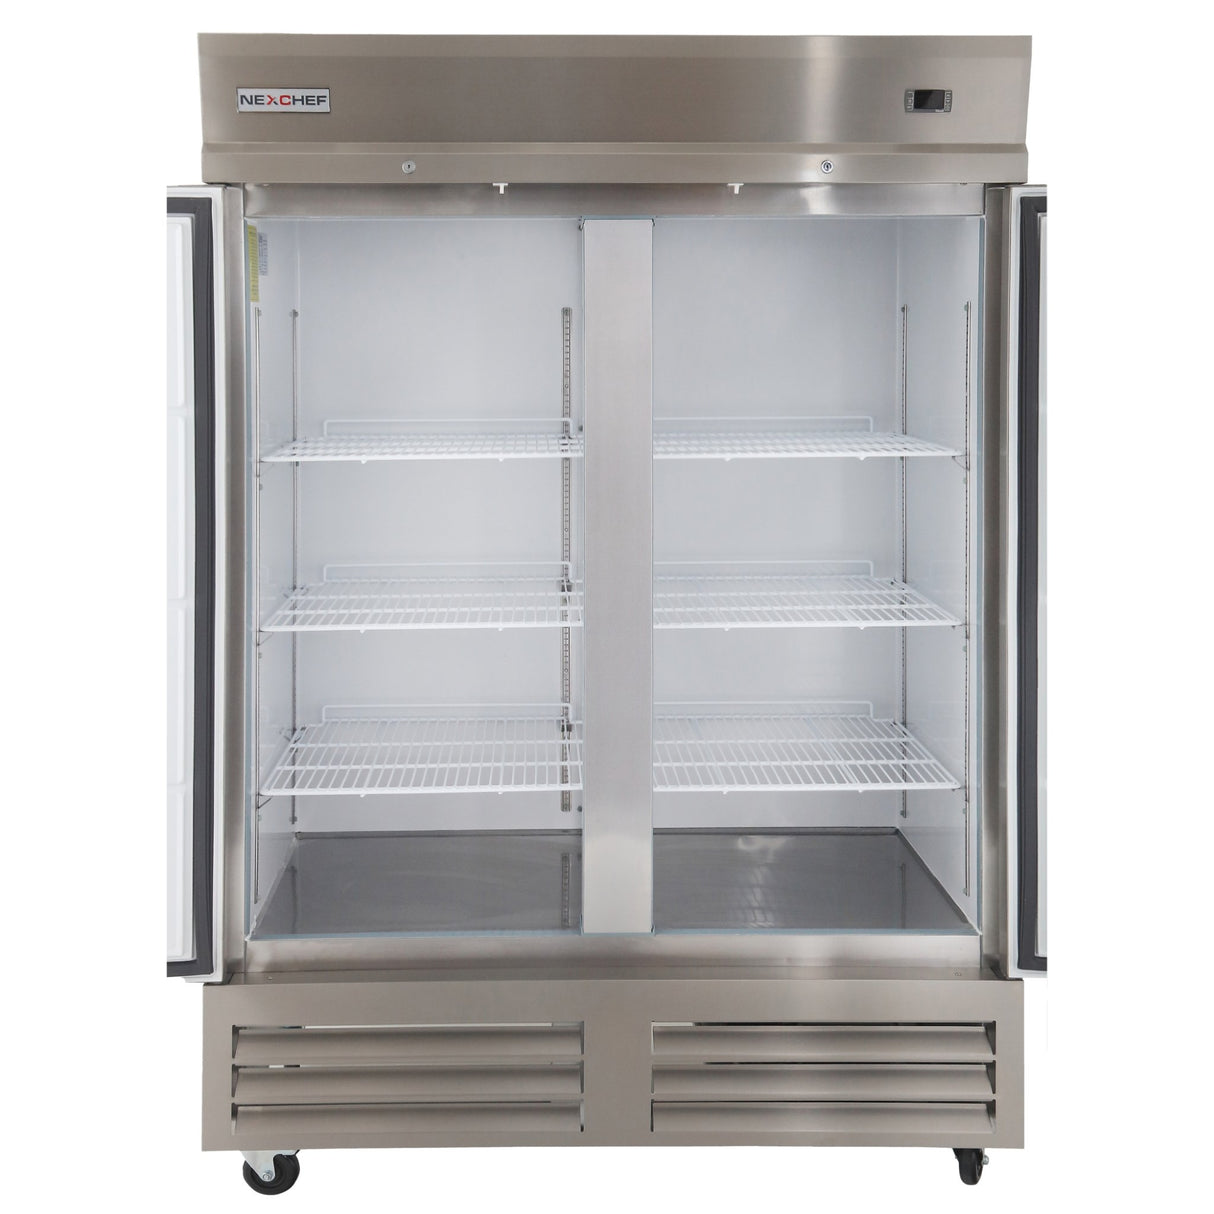 NexChef RBM2 Refrigerador comercial de dos secciones de 54 pulgadas, 2 puertas sólidas de acero inoxidable